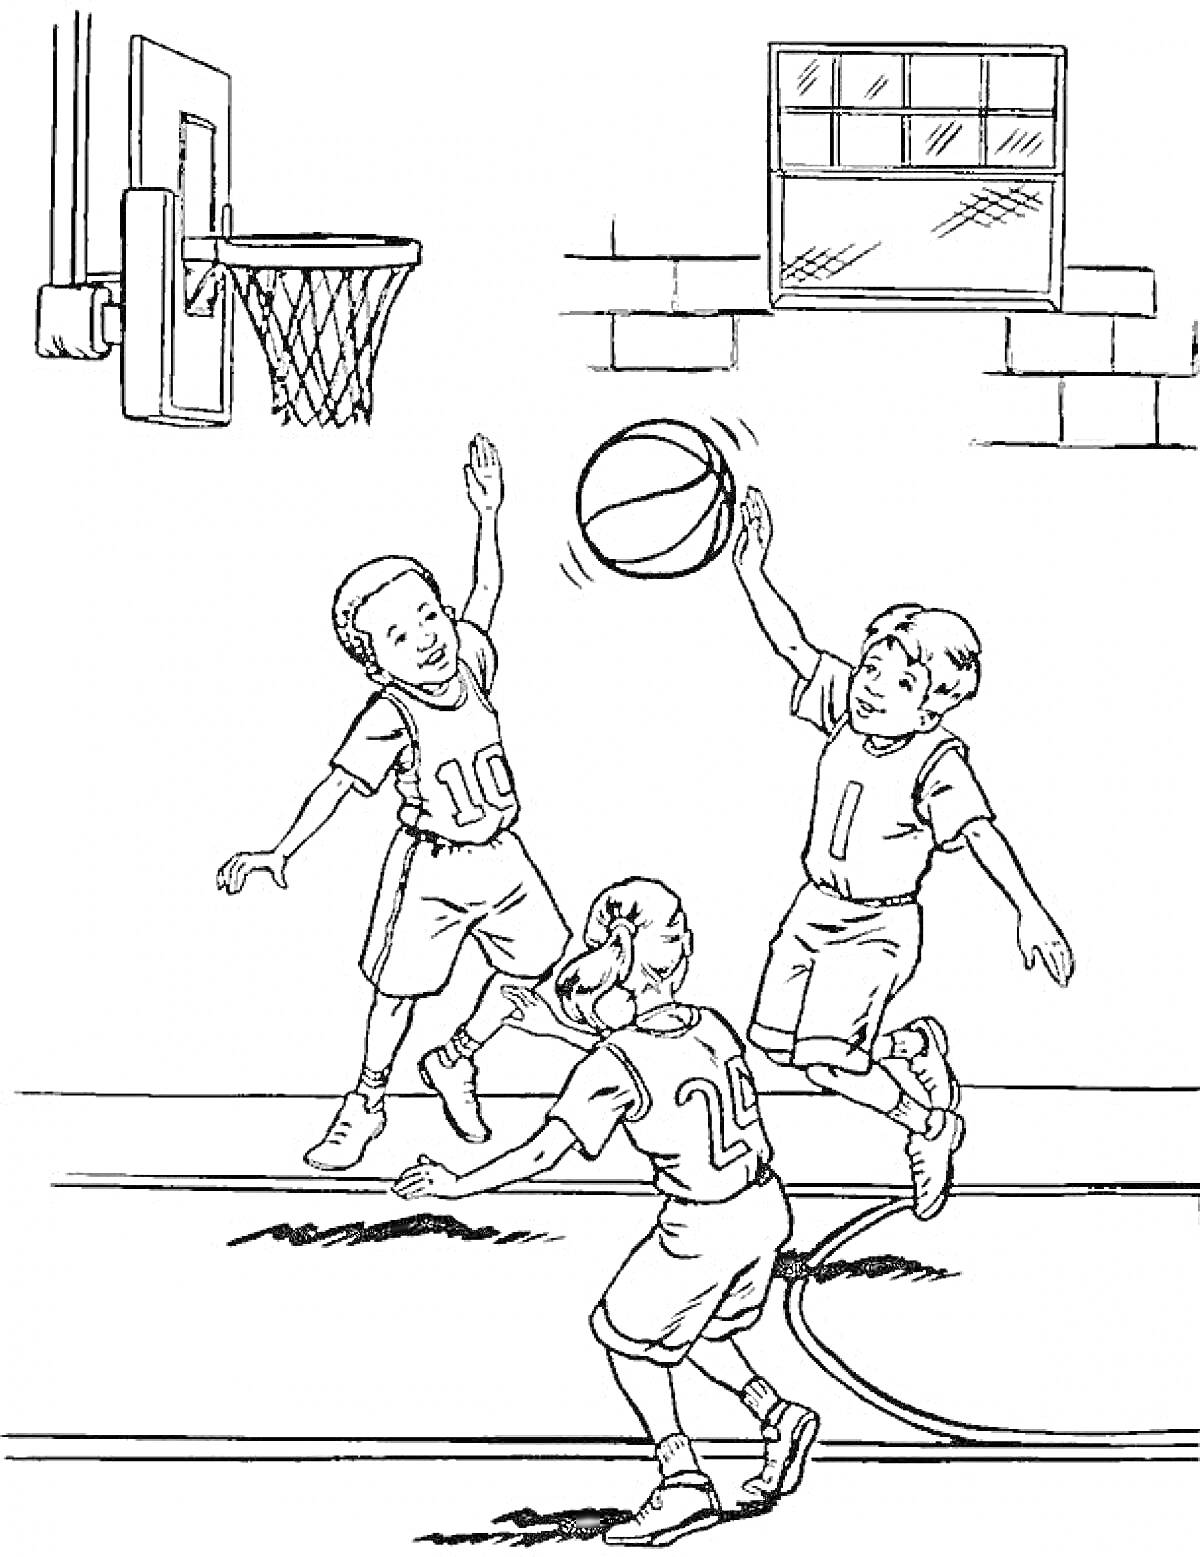 Раскраска Трое детей играют в баскетбол на площадке, один бросает мяч, двое других оказывают сопротивление, баскетбольное кольцо и окно на заднем плане